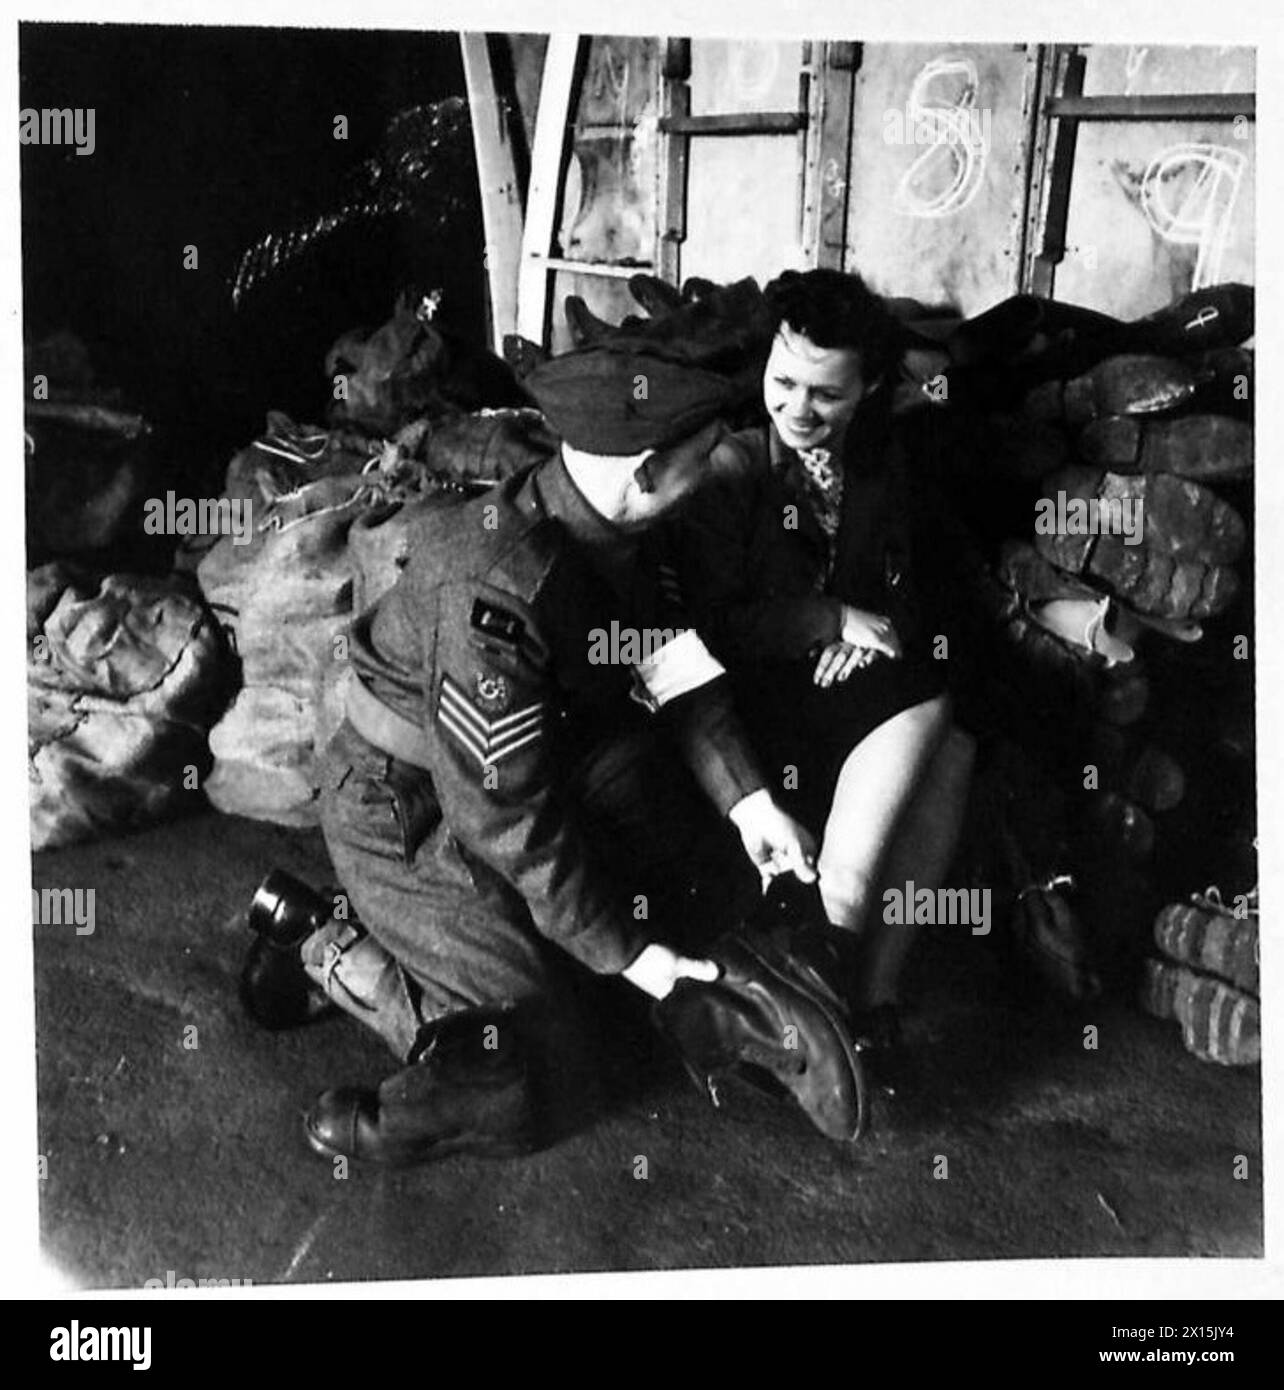 ROYAL ARMY ORDANANCE CORPS RETOUR MAGASIN DÉPÔT - Une comparaison des chaussures. Le sergent Rowe de Pembroke Docks, au sud du pays de Galles, compare la taille d'une chaussure de travailleuse à celle d'un soldat de l'armée britannique Banque D'Images